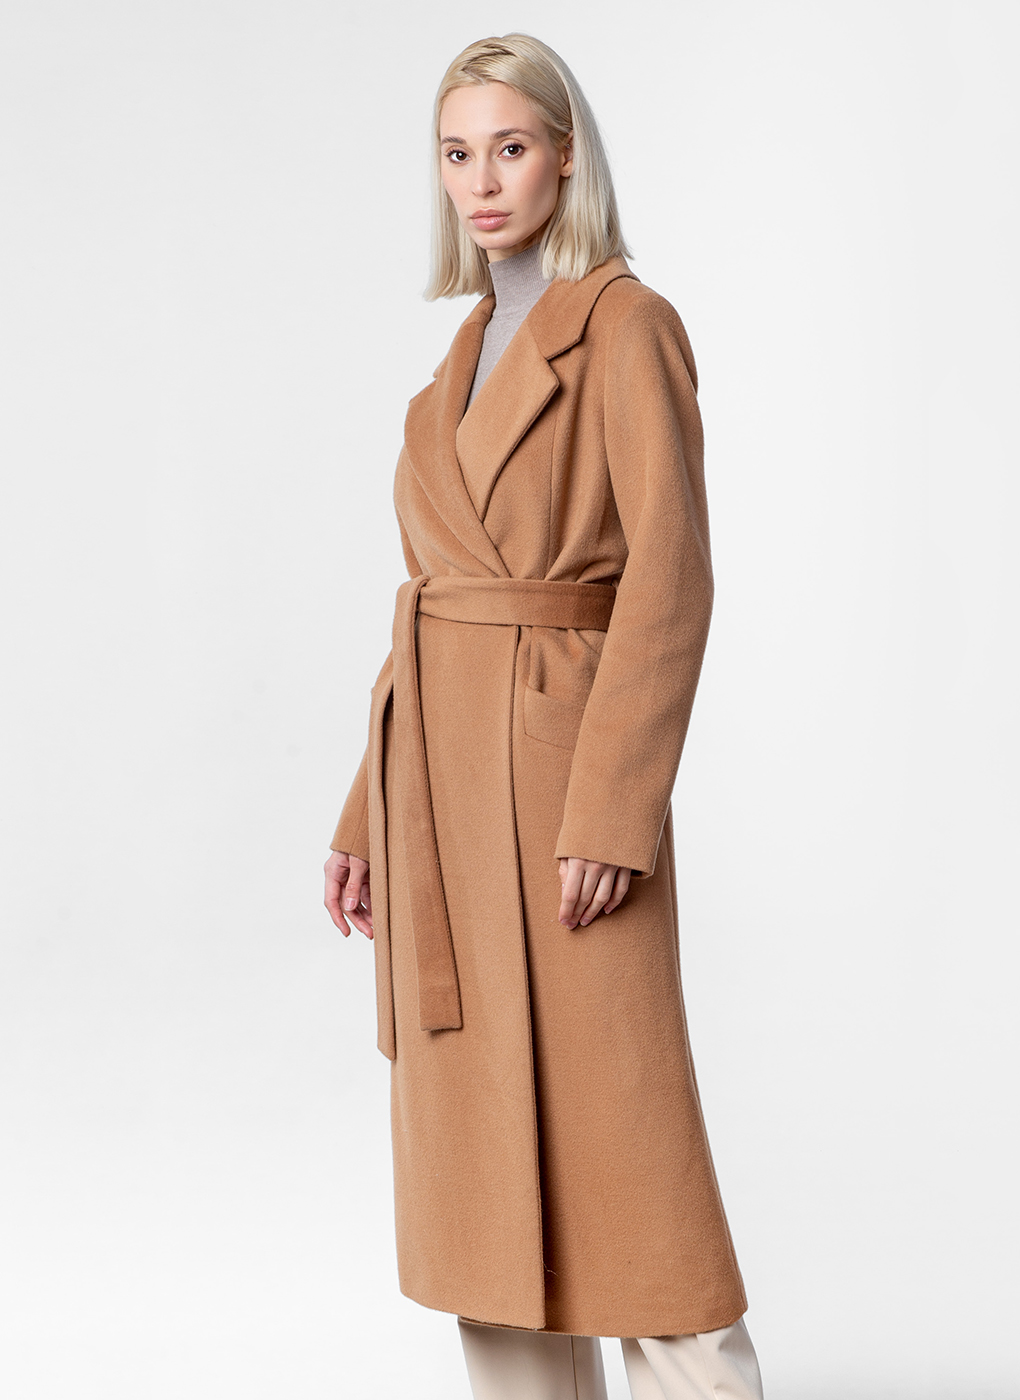 Пальто женское Каляев 59831 коричневое 50 RU